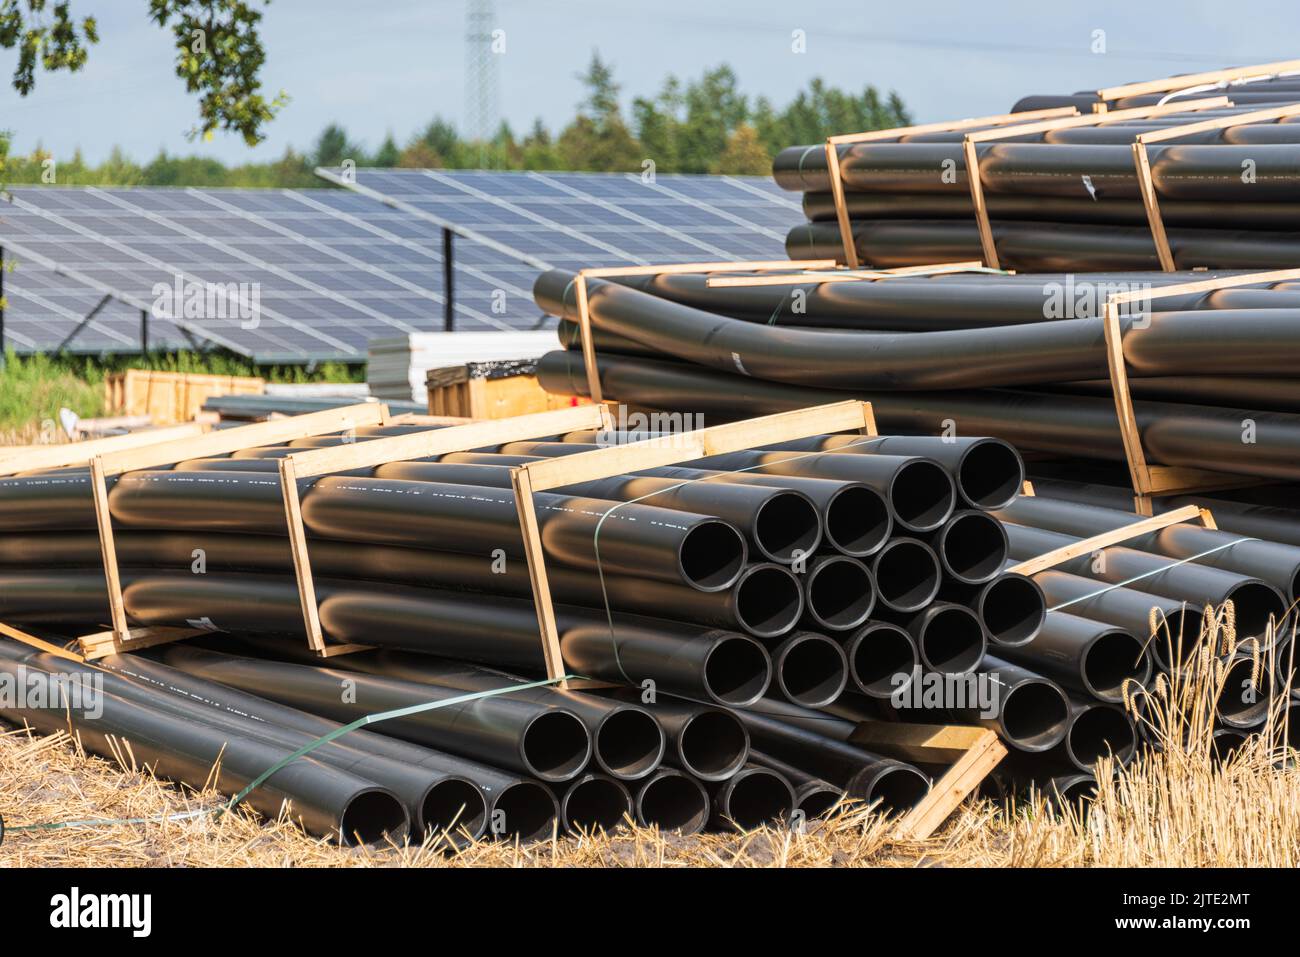 Baumateriallagerung auf einer Großbaustelle für grünen Solarstrom auf einer Baustelle in Schleswig-Holstein Stock Photo